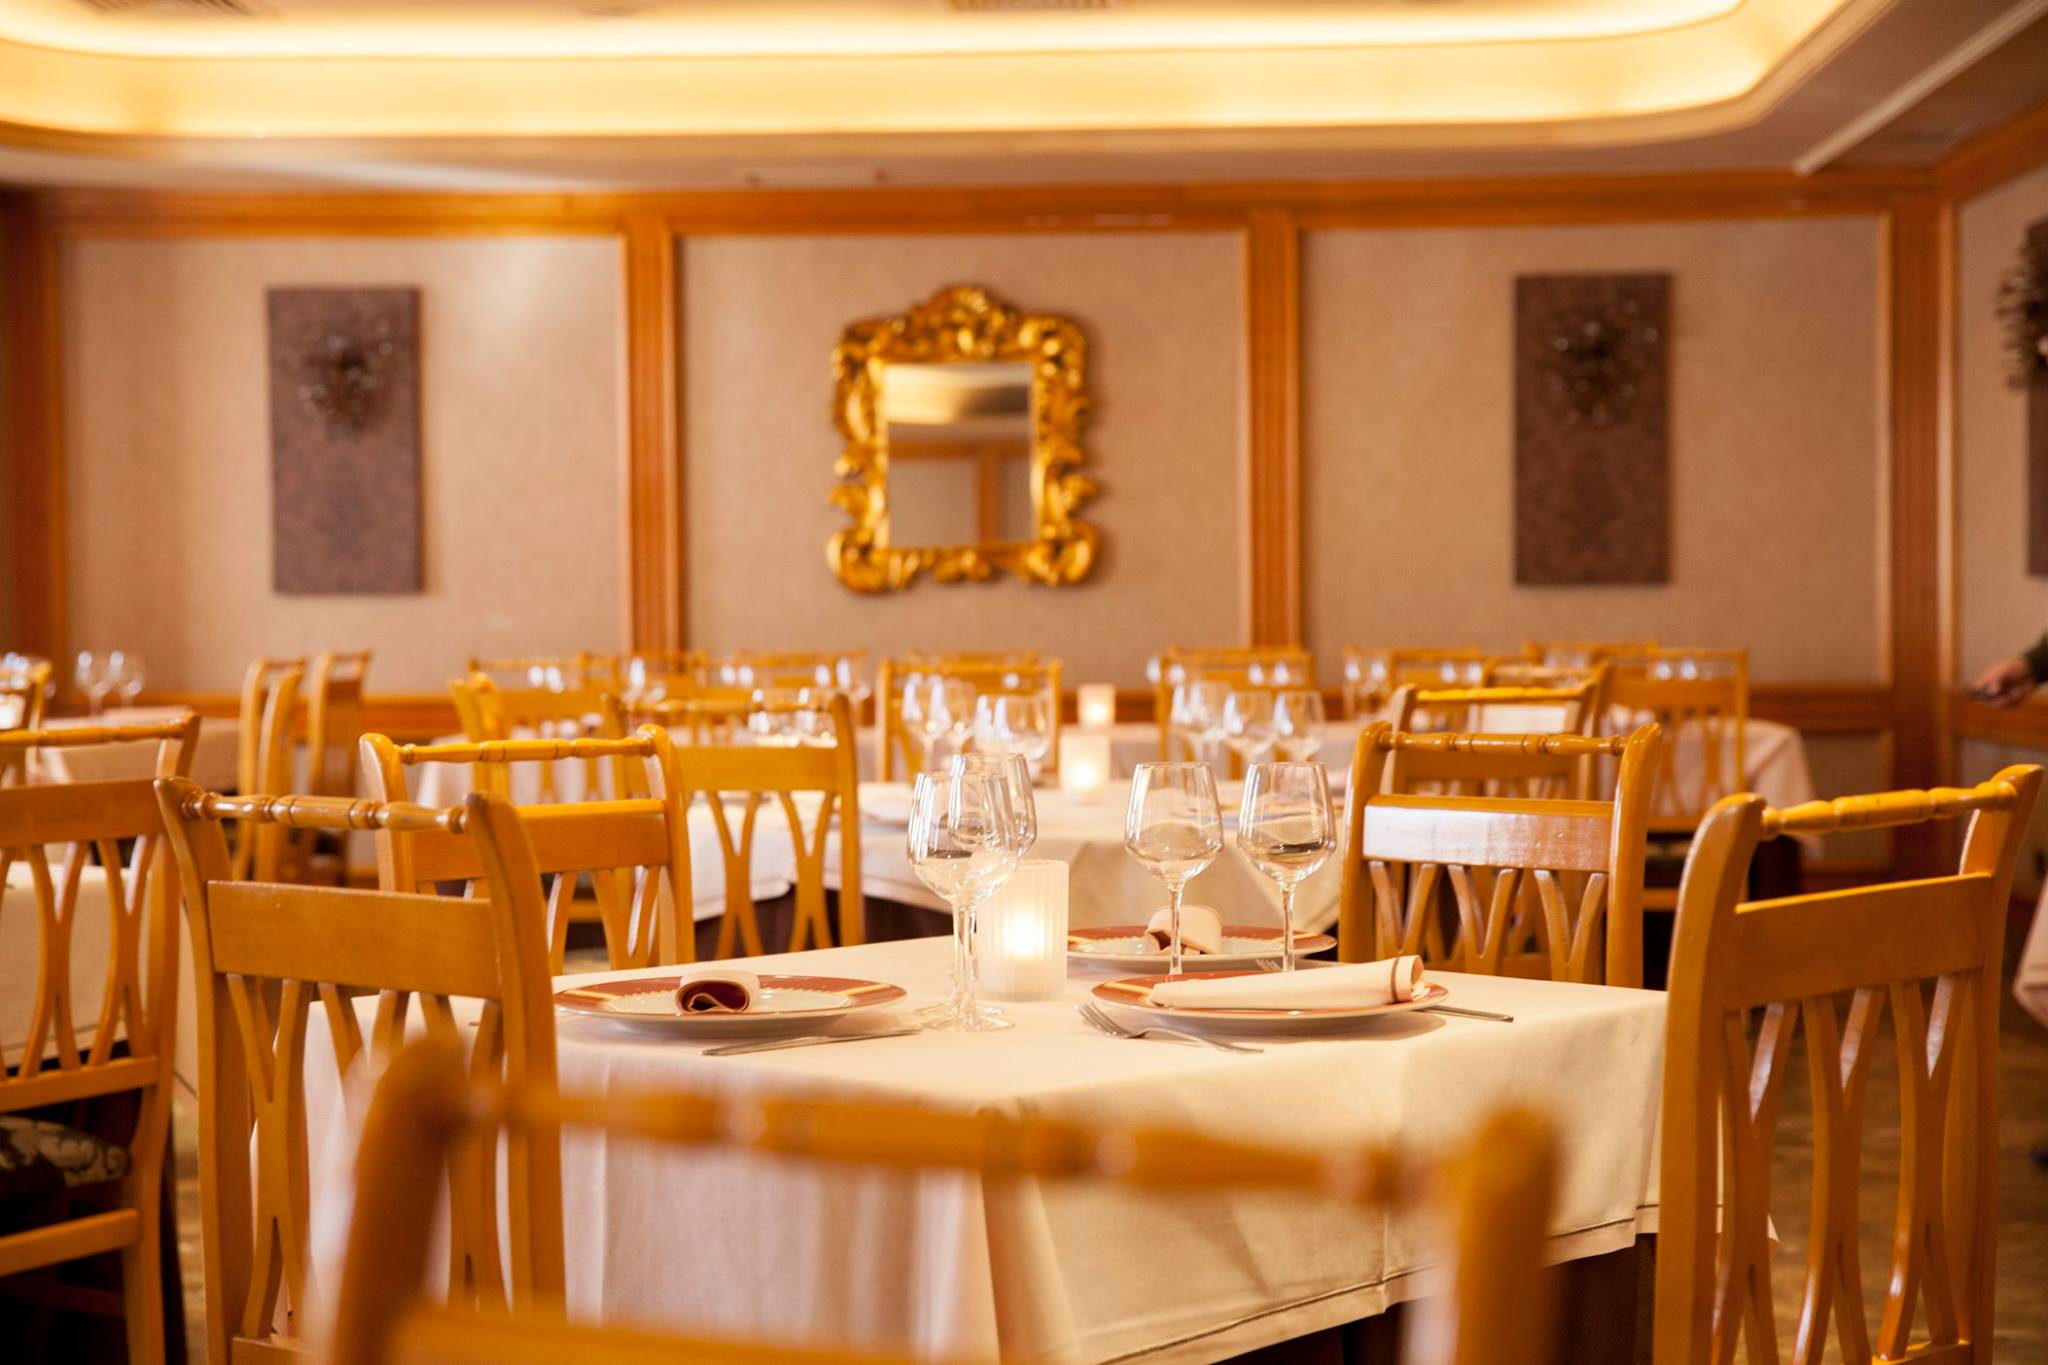 Restaurante del Hotel Castilla de Torrijos, con platos de cocina local y con salones para reuniones de trabajo y otras celebraciones.       